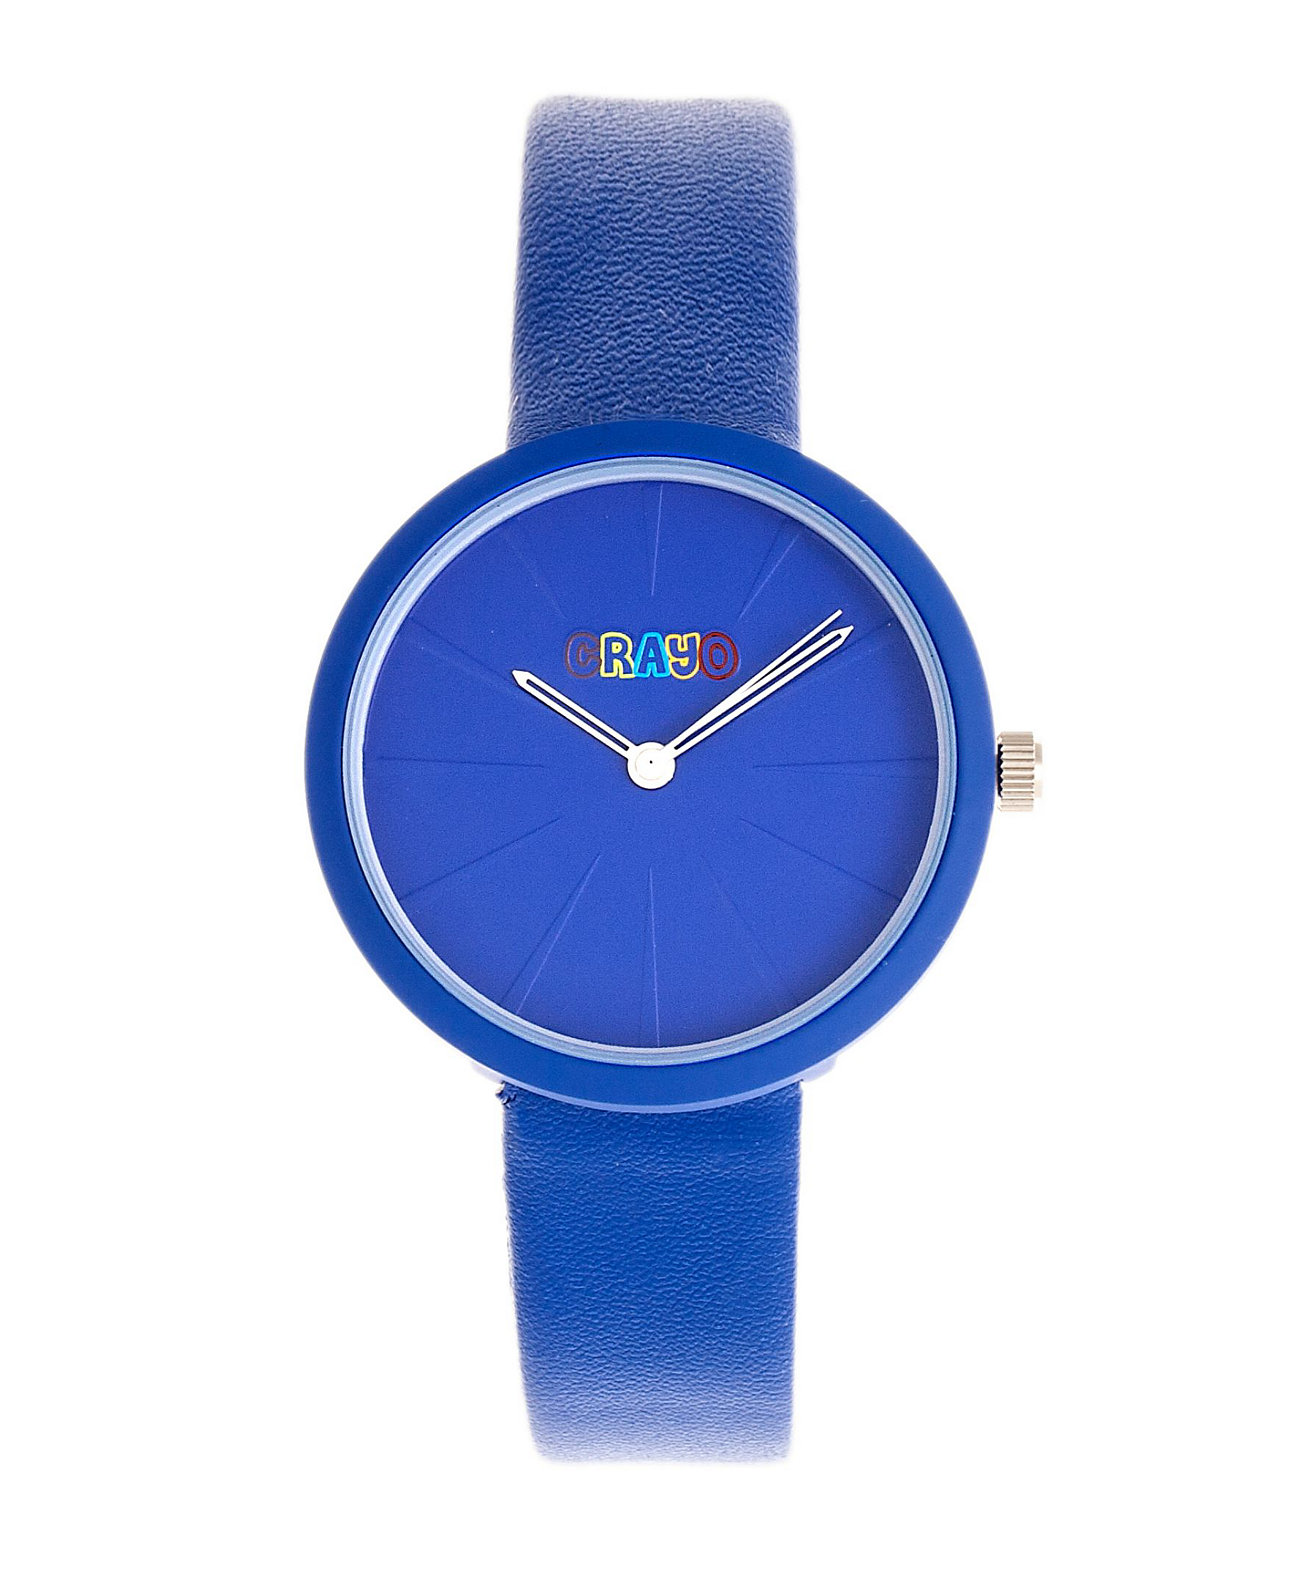 Мужские часы с ремешком из синей кожи с клинком Crayo